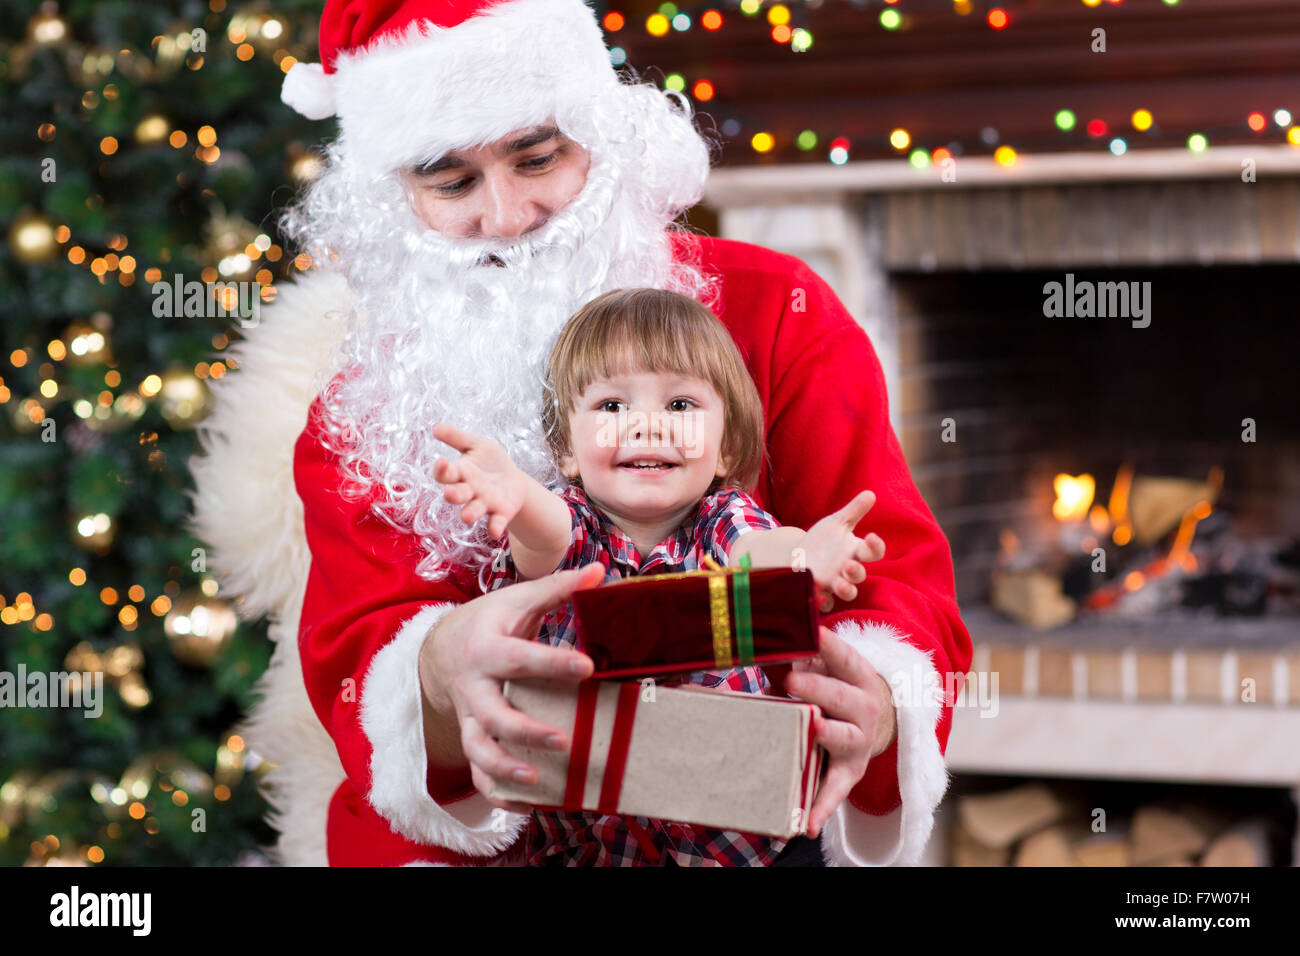 Weihnachten und Kindheit Konzept - lächelnde Kind Junge mit Weihnachtsmann und Geschenke über Lichter Hintergrund Stockfoto